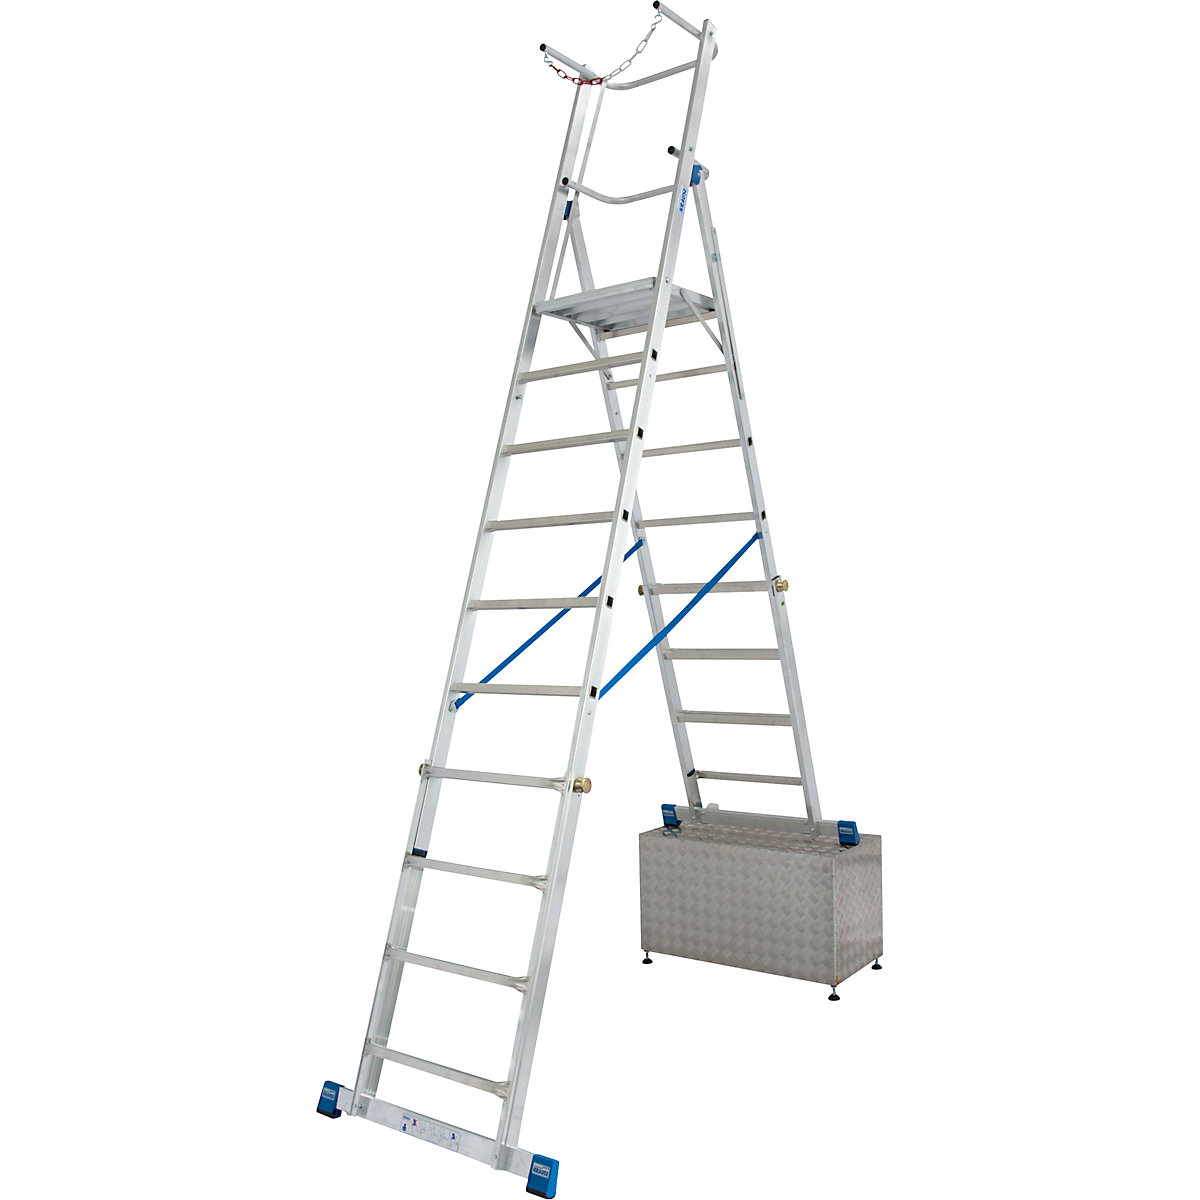 Teleskopska lestev s ploščadjo – KRAUSE, nastavitev višine s sistemom ClickMatic, 8 – 10 klinov